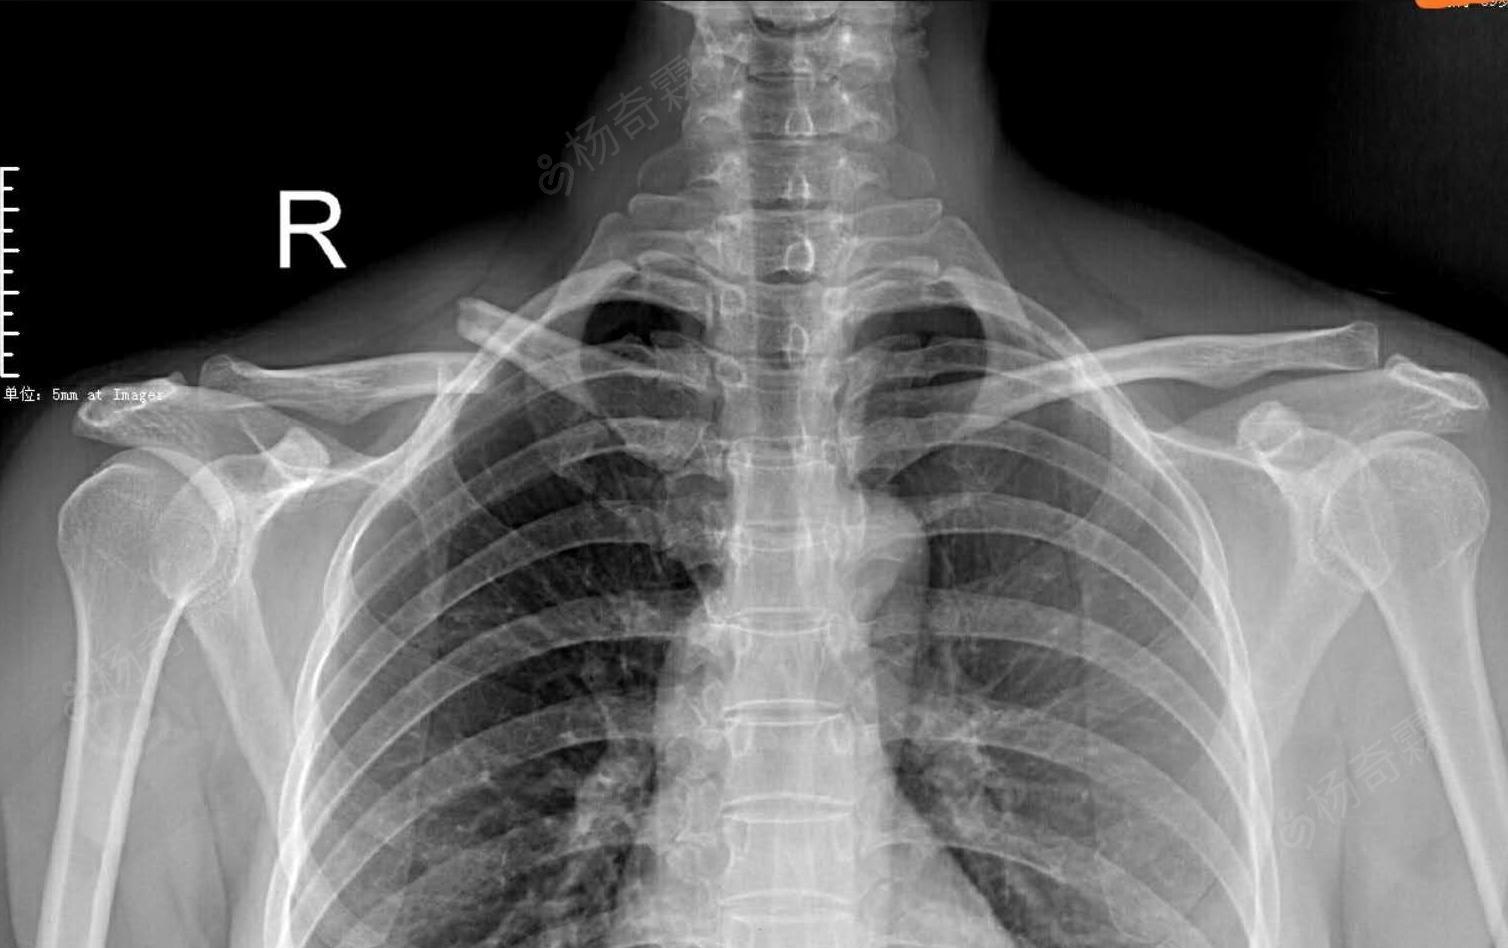 胸锁关节拍片位置图片